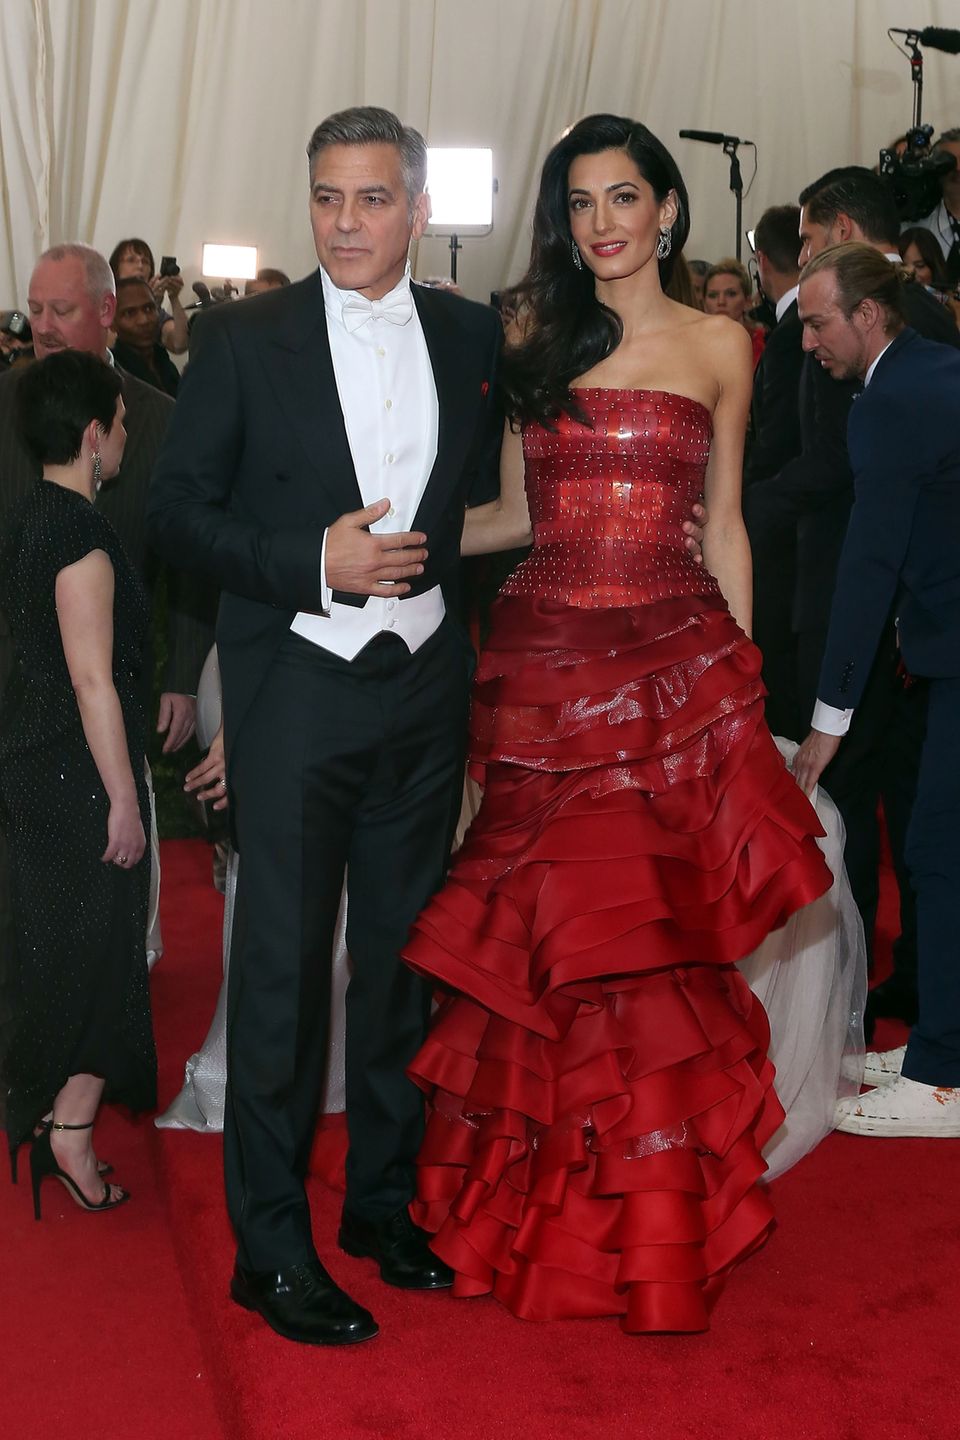 Met Gala 2015: George & Amal Clooney